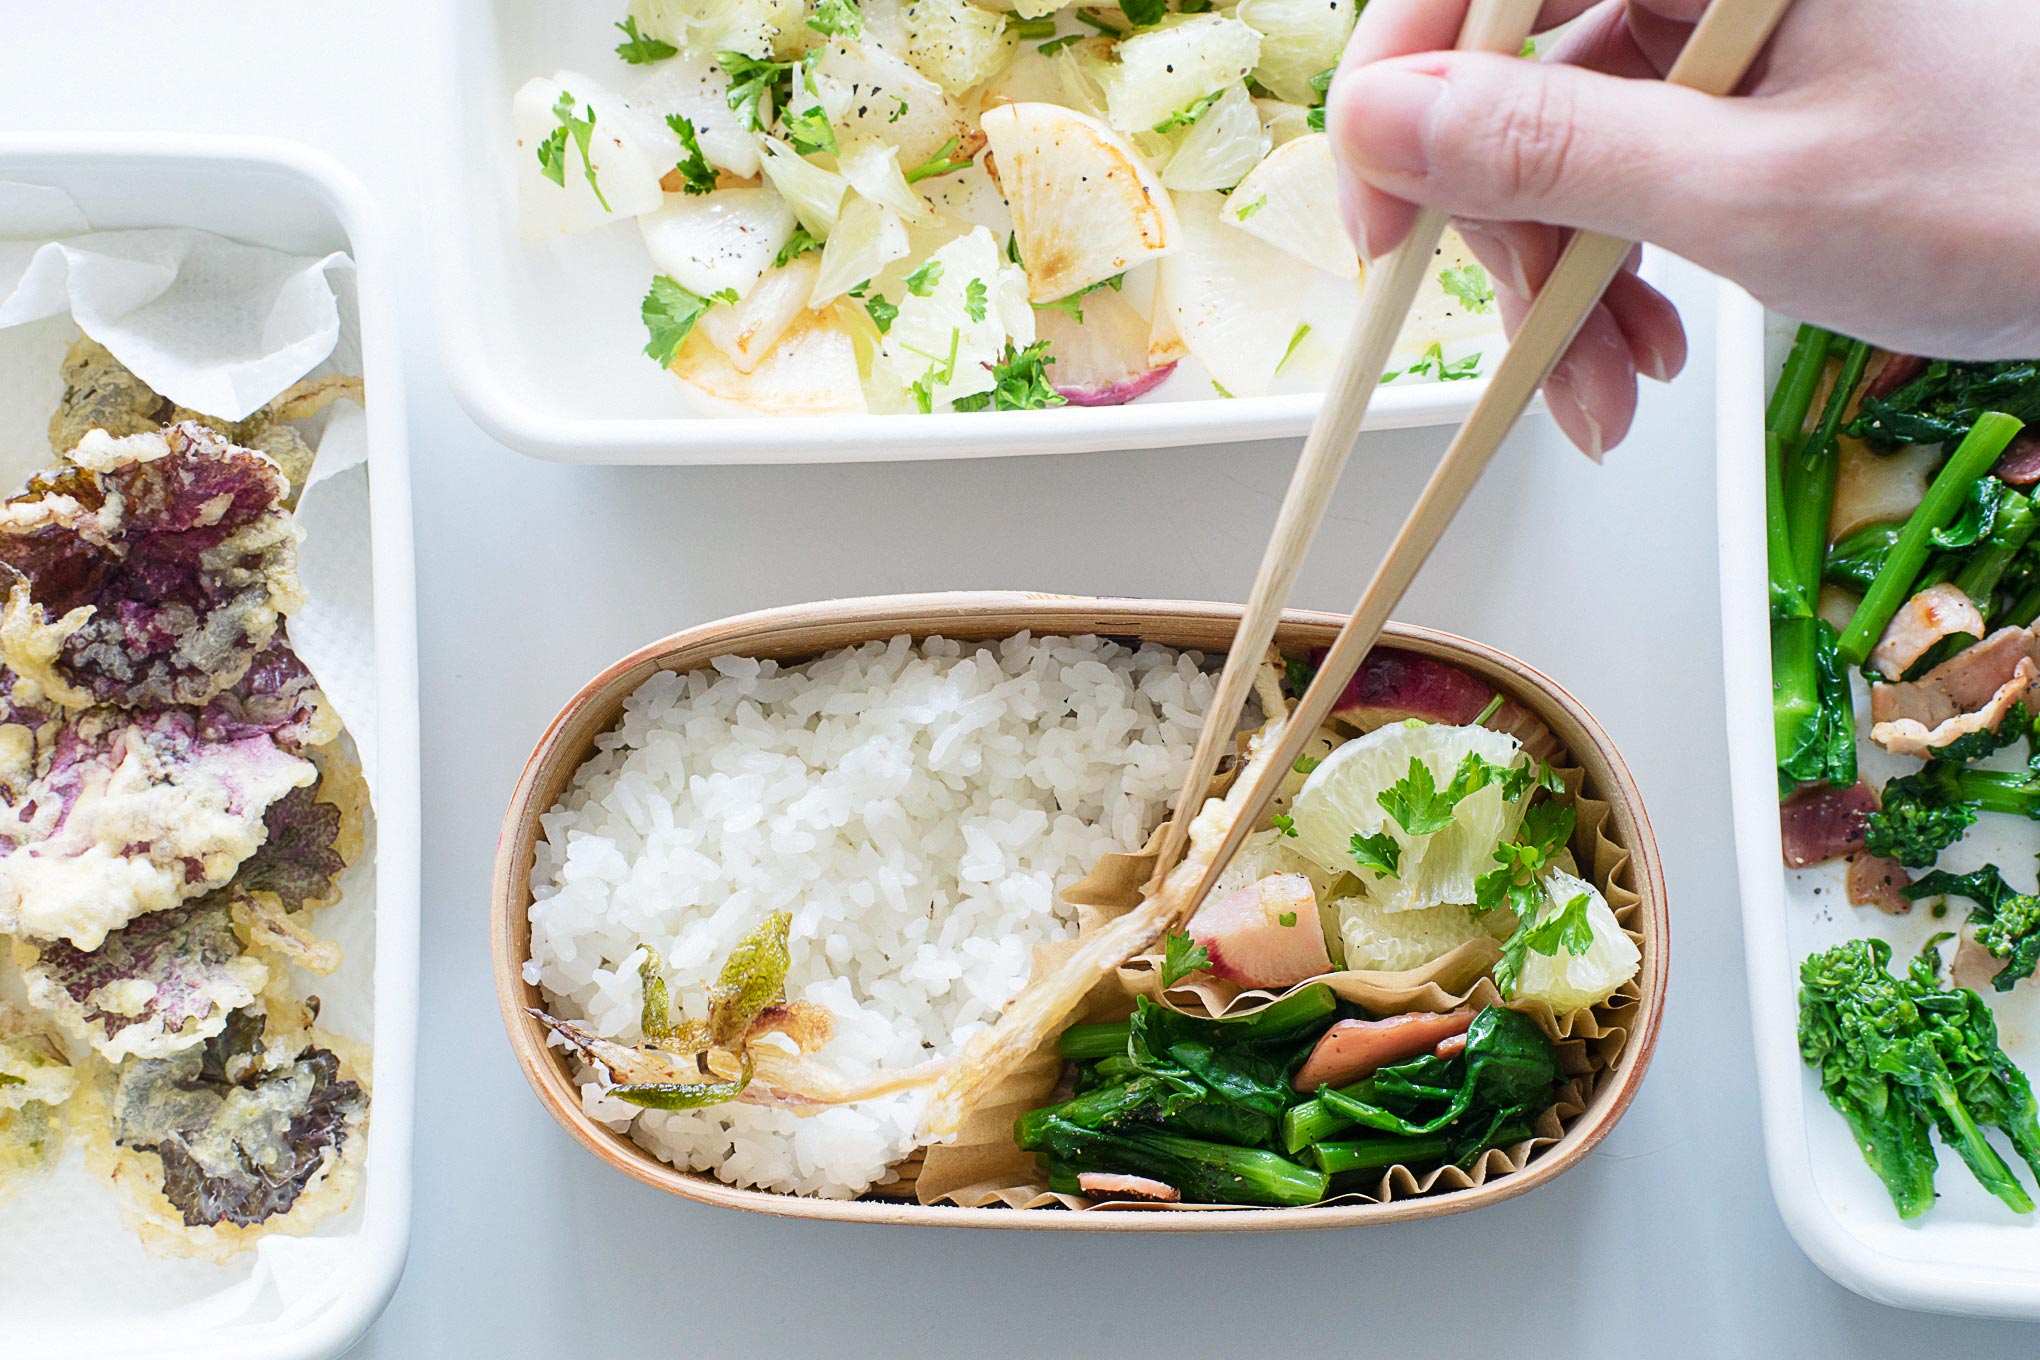 お弁当の詰めかた その4 ユキノシタとシュンランの山菜天ぷら弁当はご飯の上にびろーんと乗せるのがコツ 曲げわっぱな日々